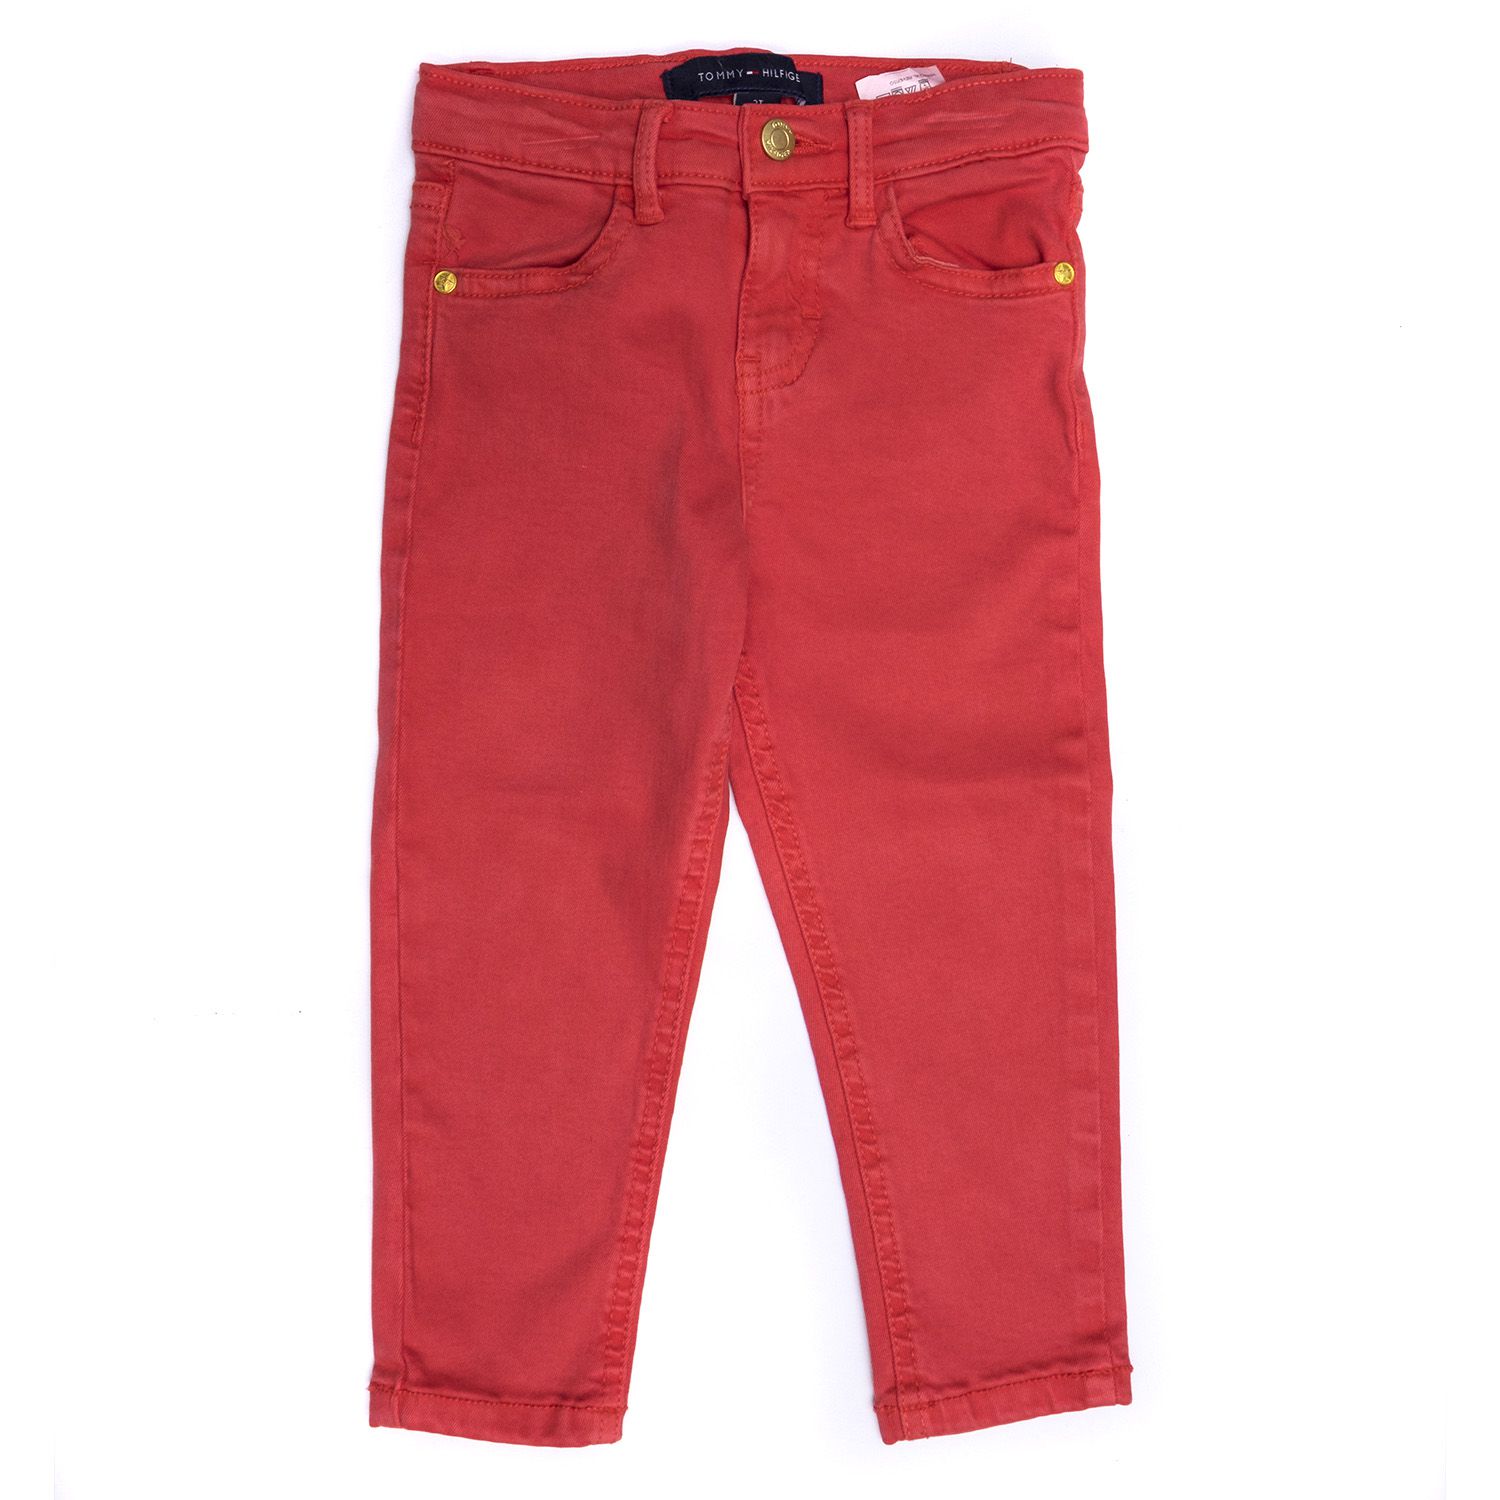 TOMMY HILFIGER - Calça Jeans "Vermelho" (Infantil) -NOVO- - Pineapple Co. |  100% Autentico | Itens Exclusivos e Limitados.